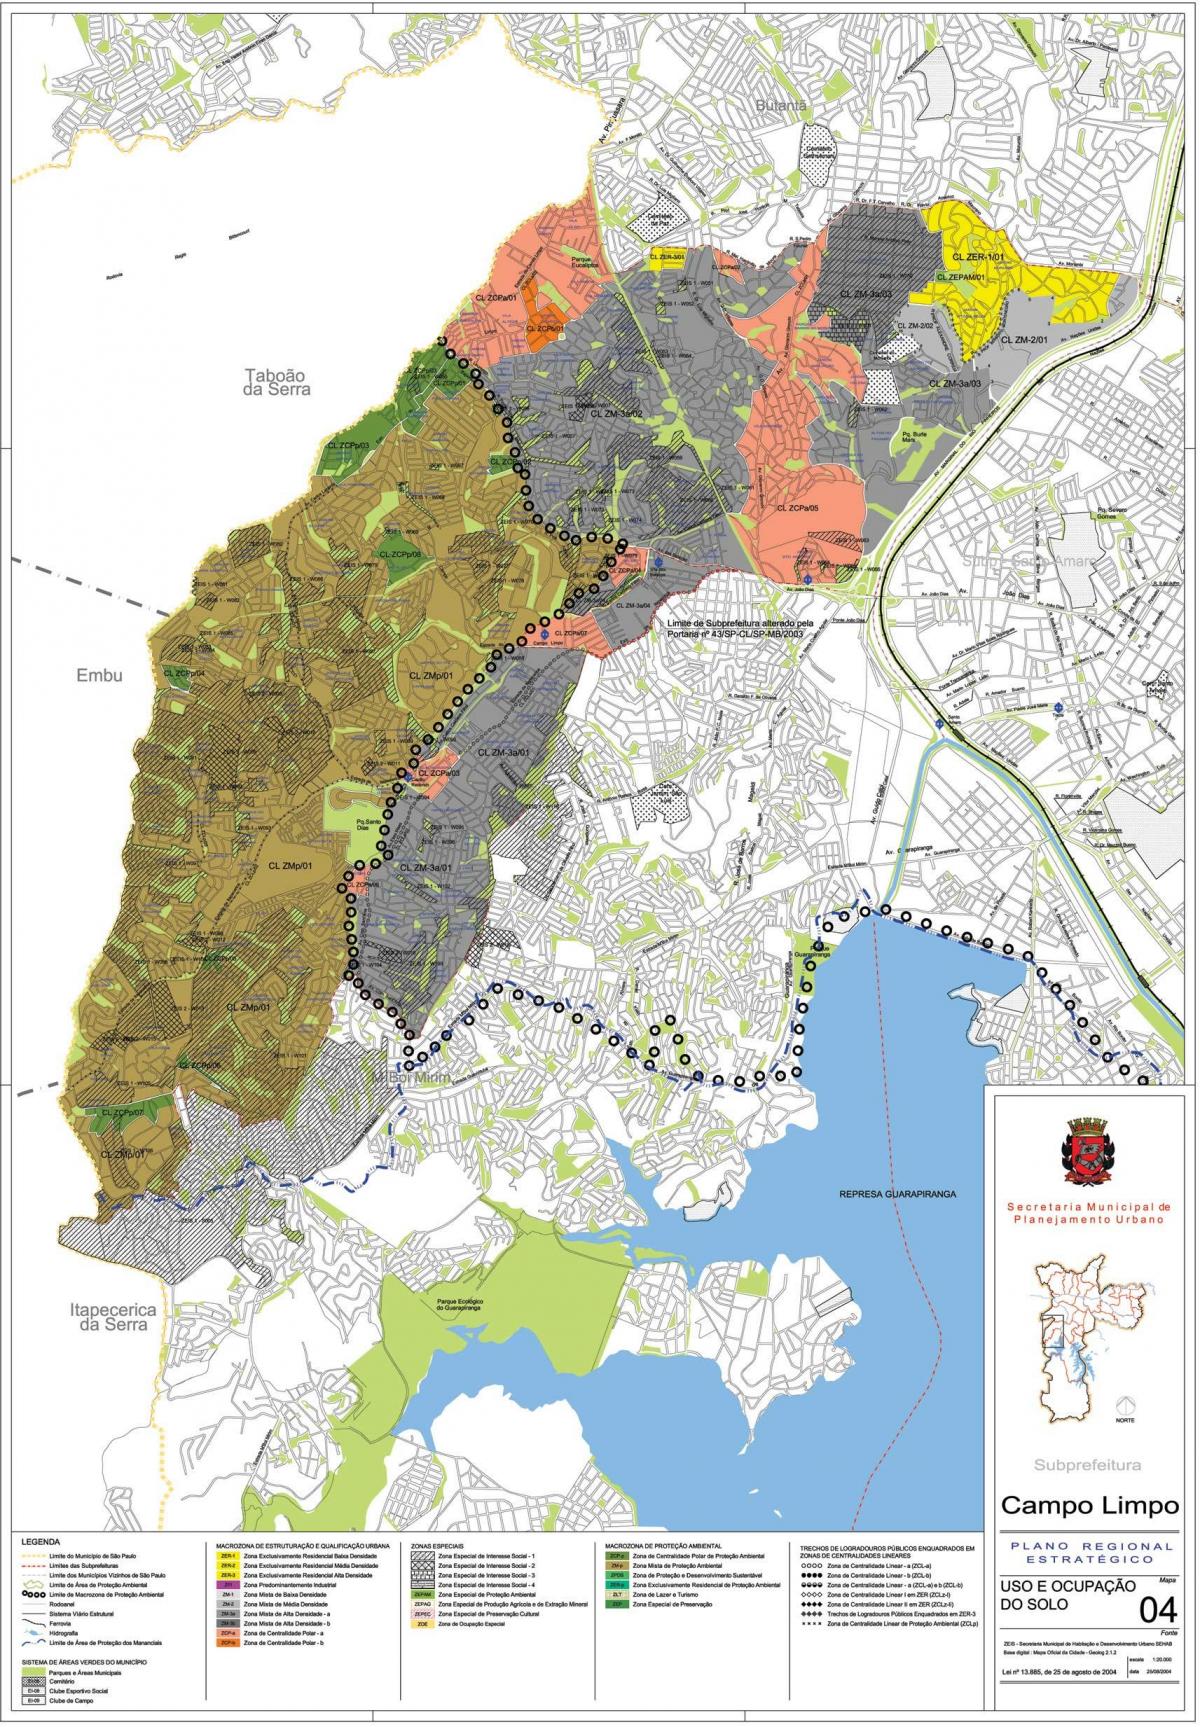 Kort over Campo Limpo São Paulo - Besættelse af jord